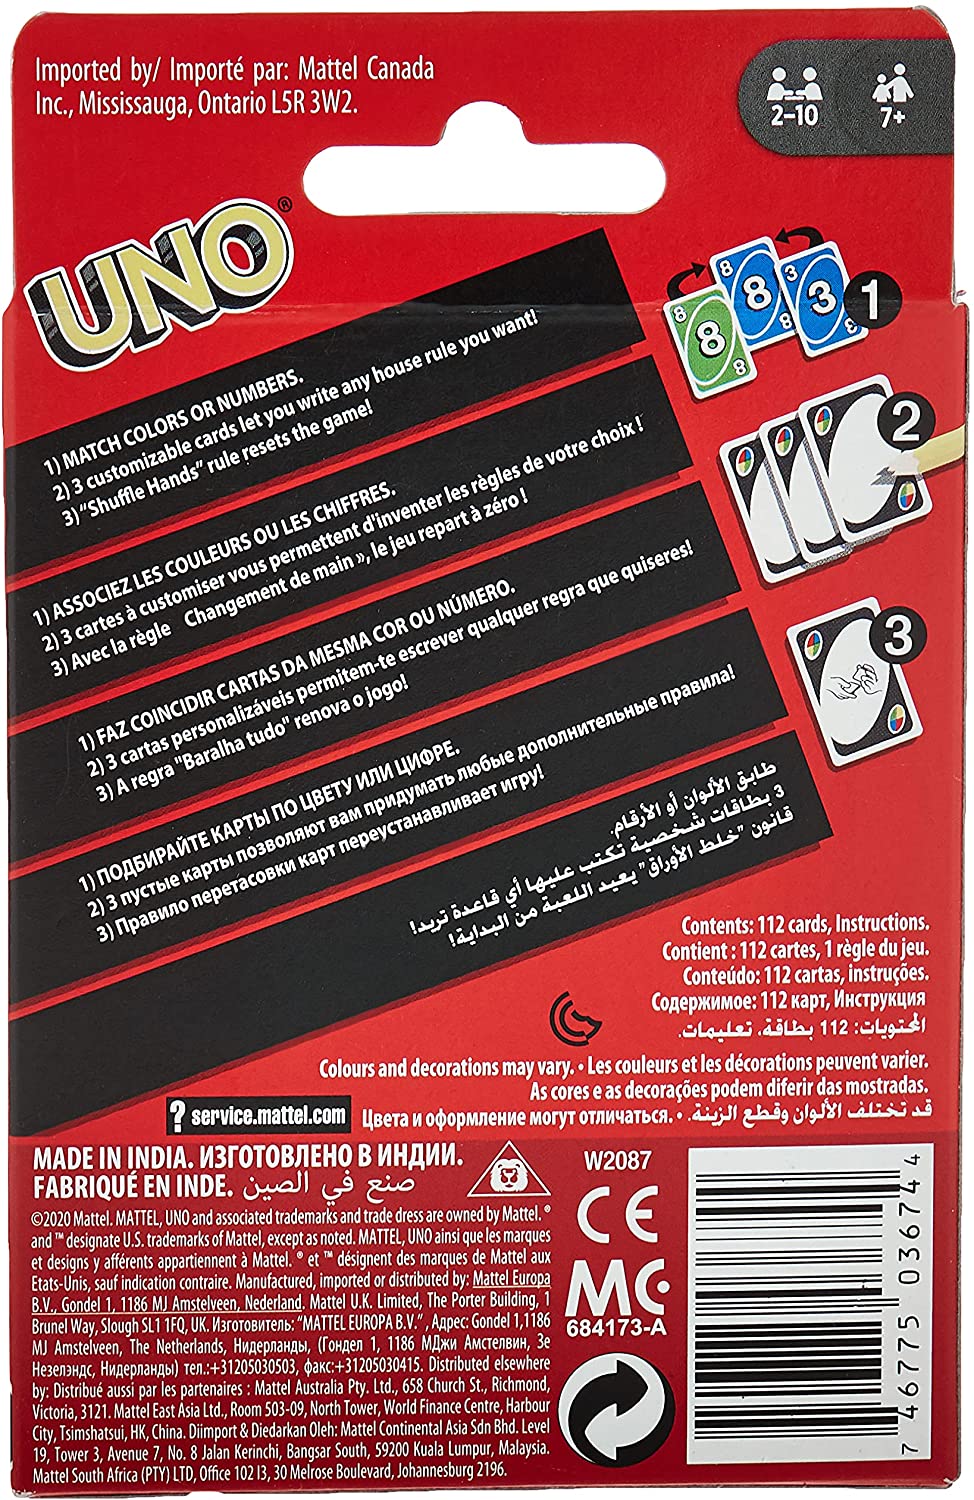 Mattel Games - Uno Flip! - Jogo de Cartas